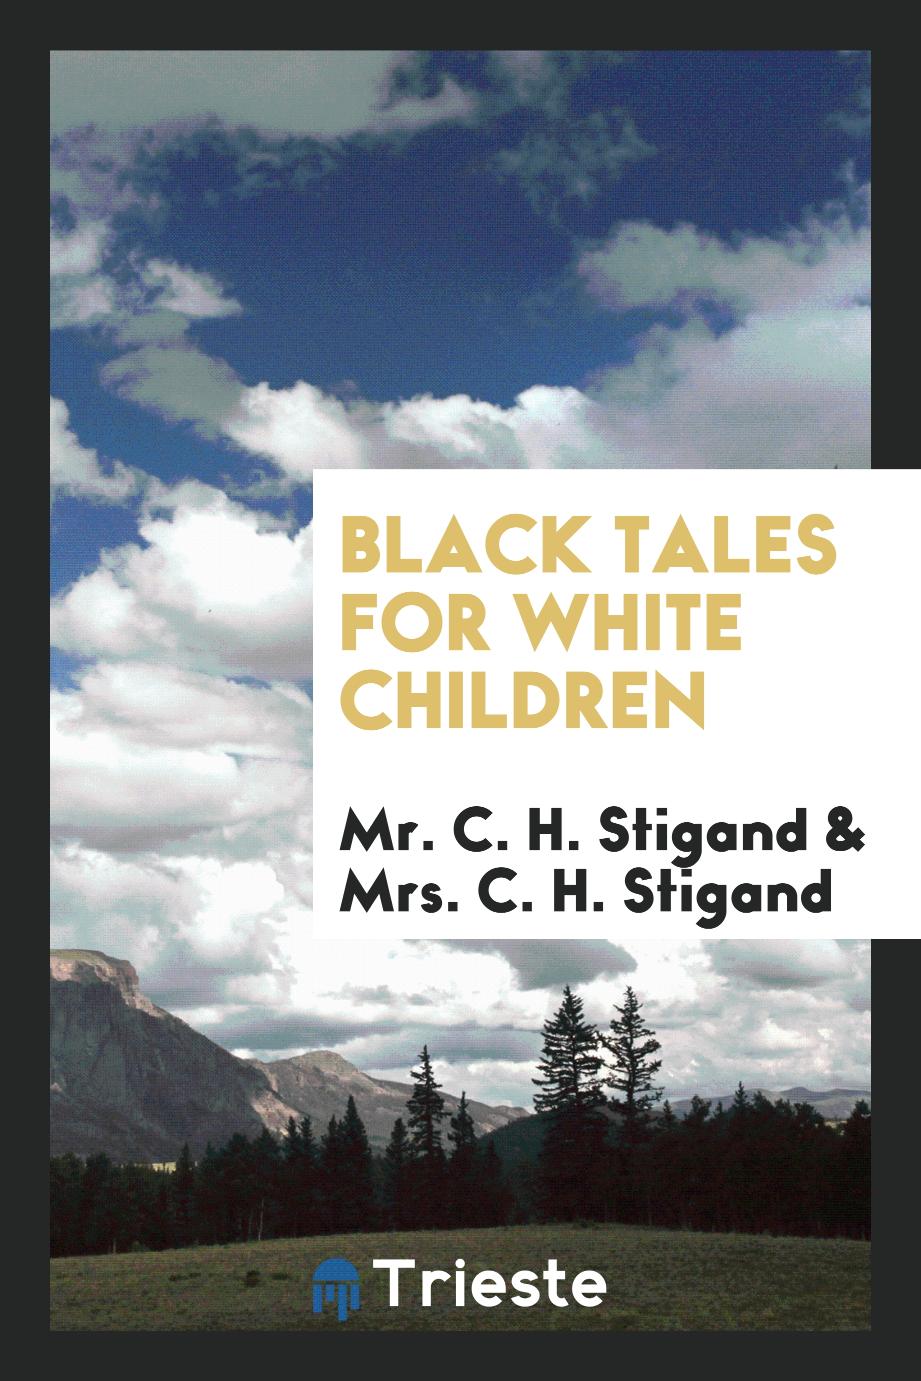 Black tales for white children